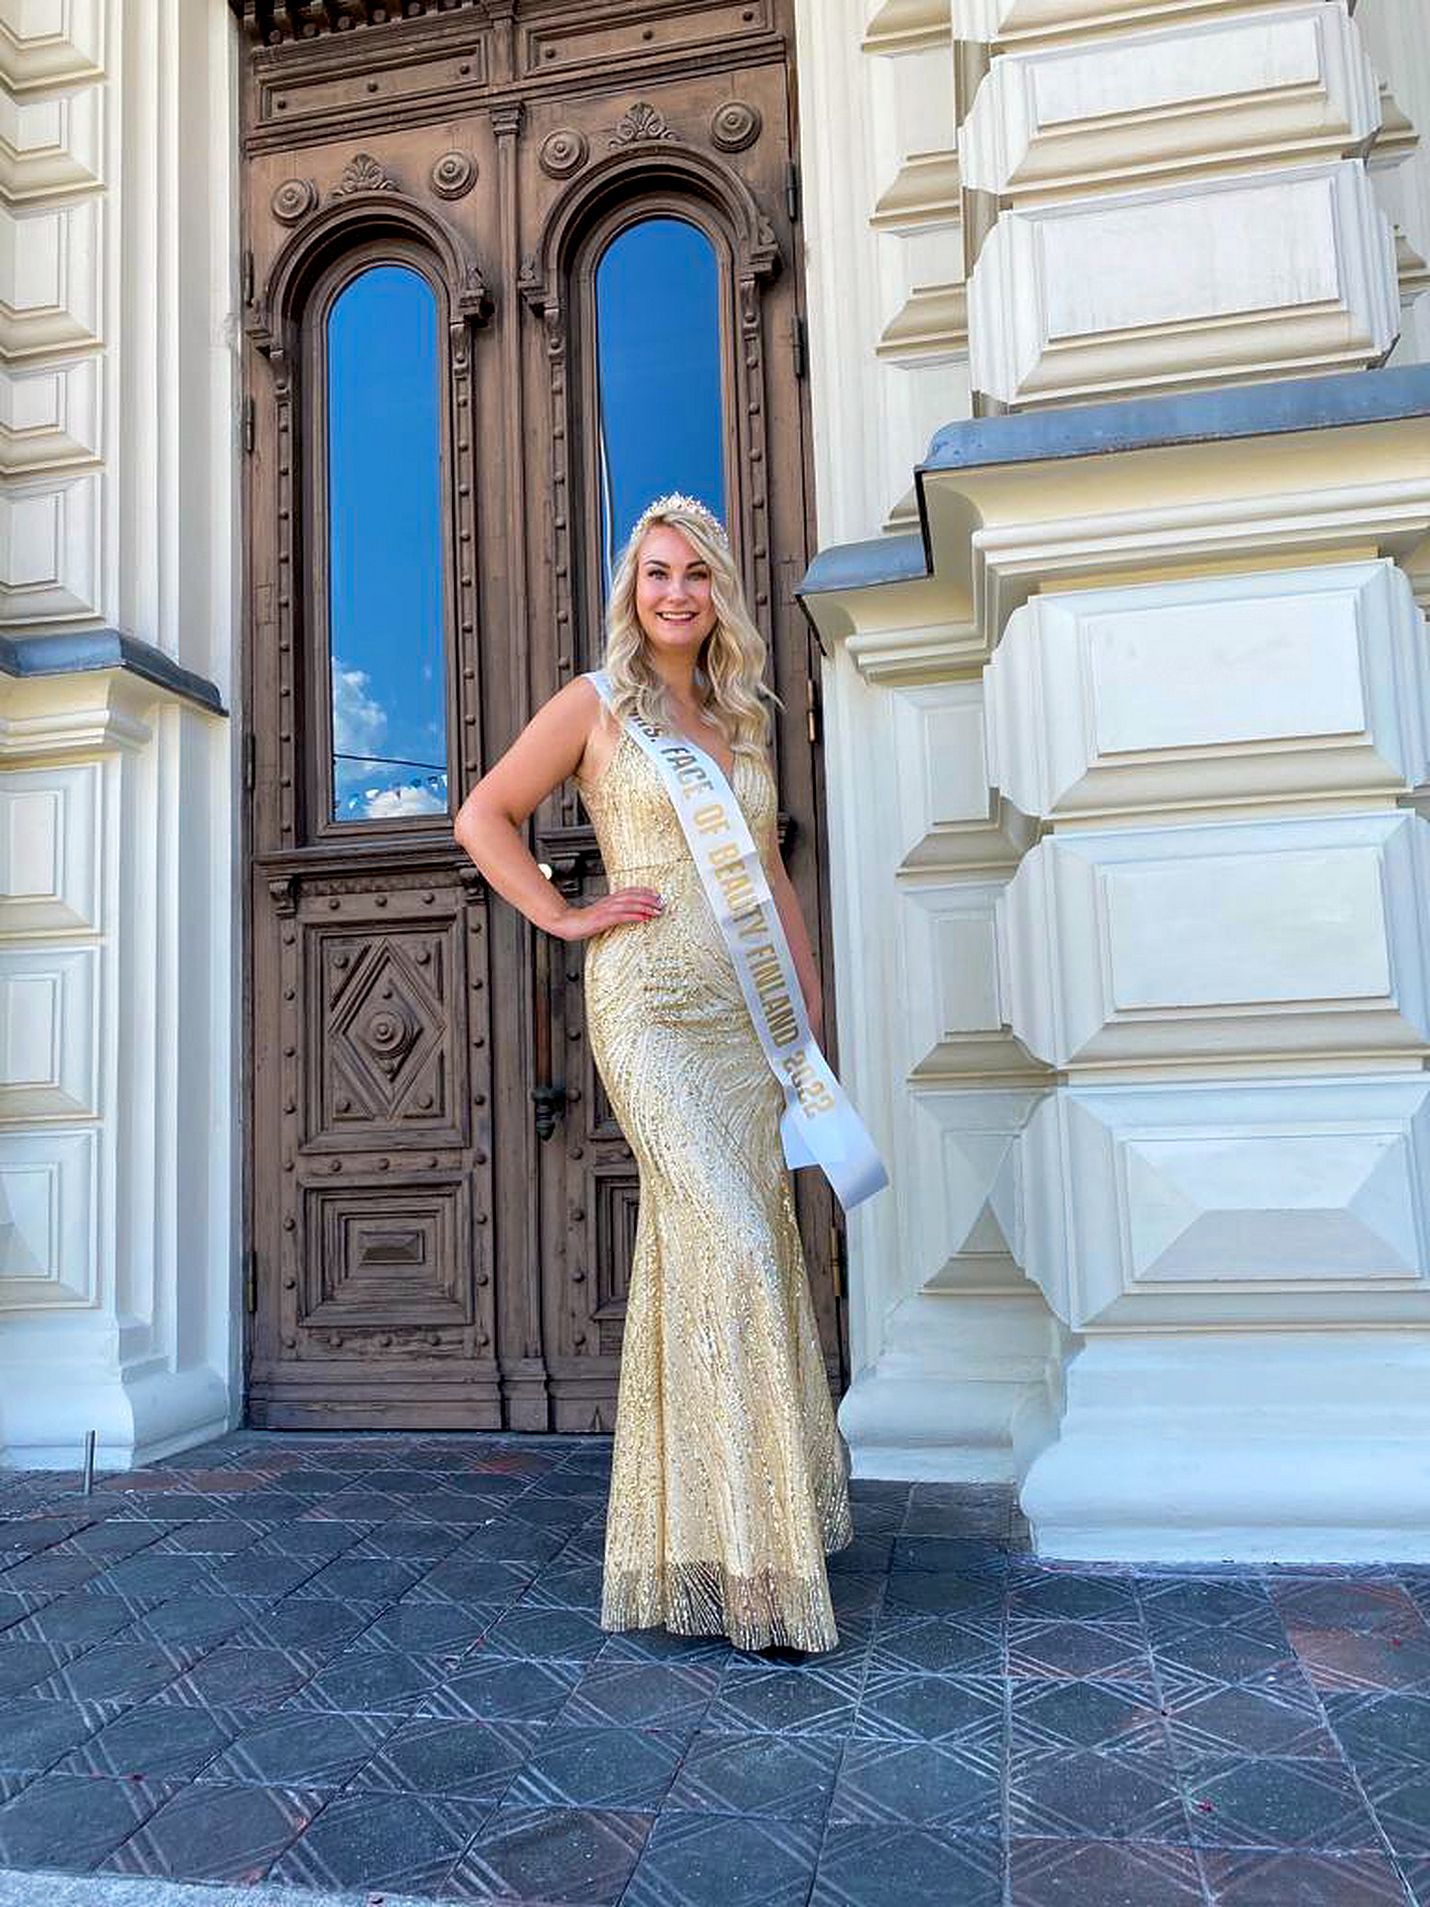 Suomen edustaja kansainvälisessä Mrs Face of Beauty -kilpailussa, raumalainen Elena Holmstén sai kruunun ja missinauhan viime viikon maanantaina.